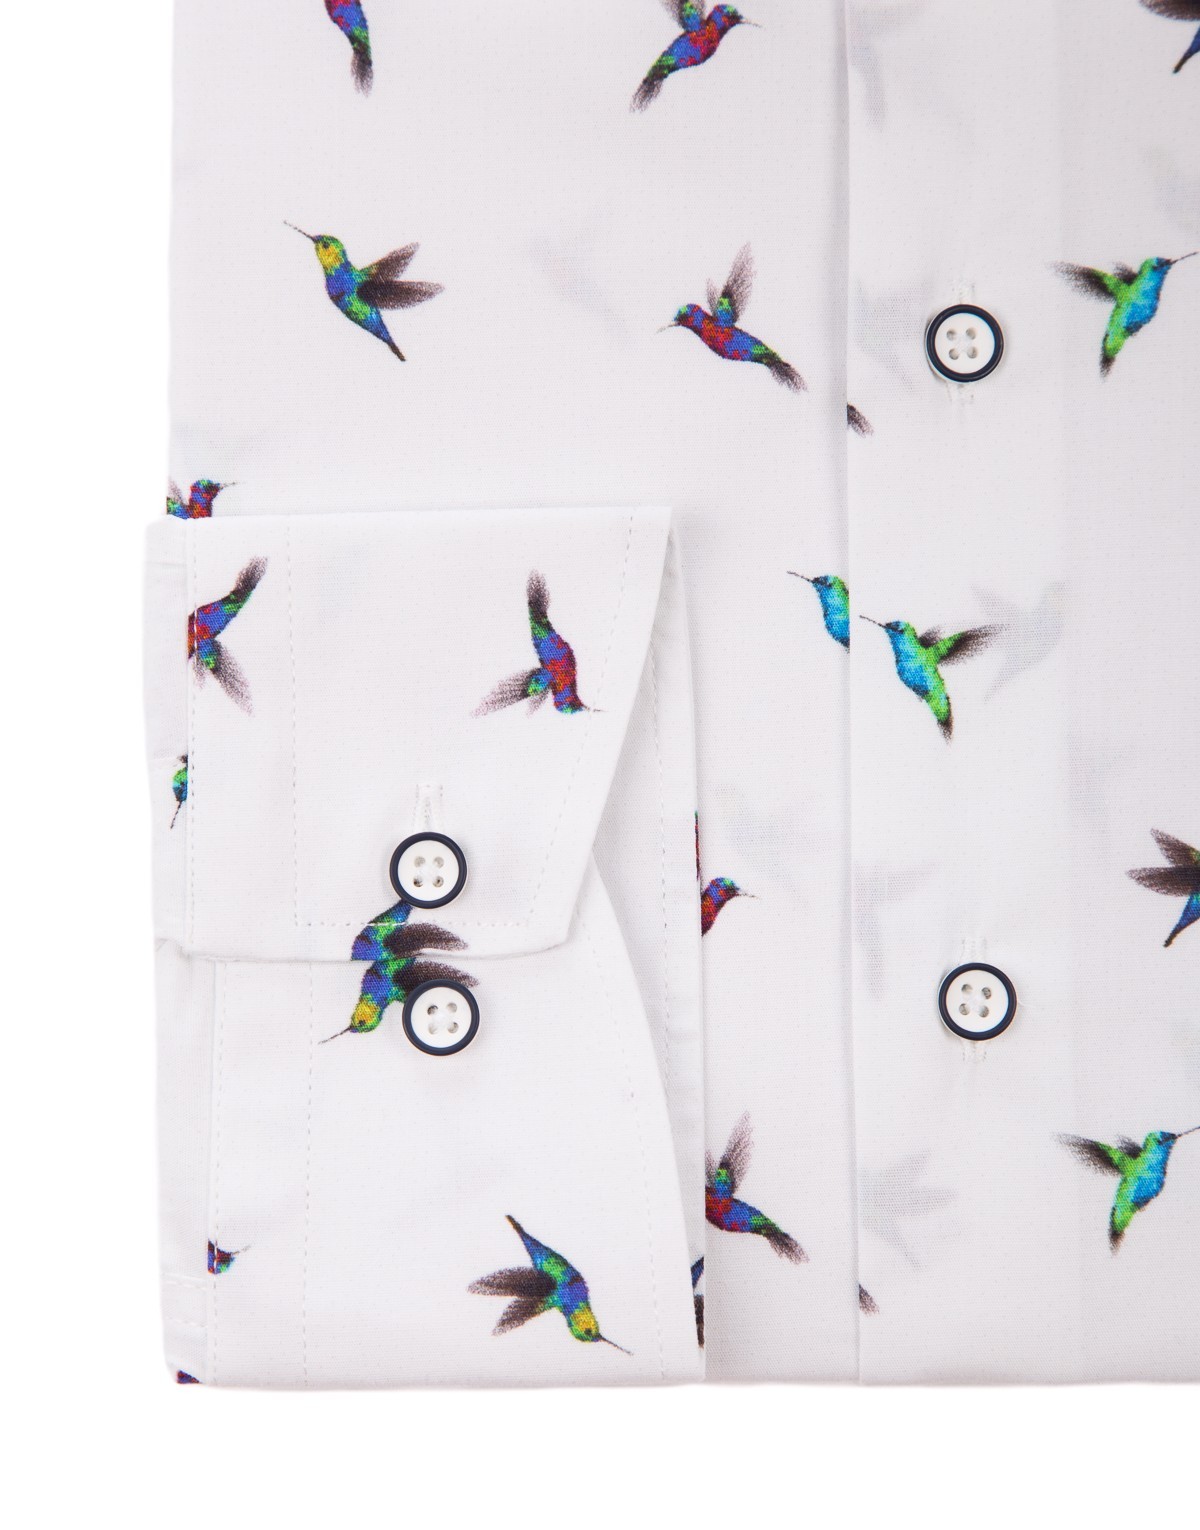 Koszula w kolibry KT4047